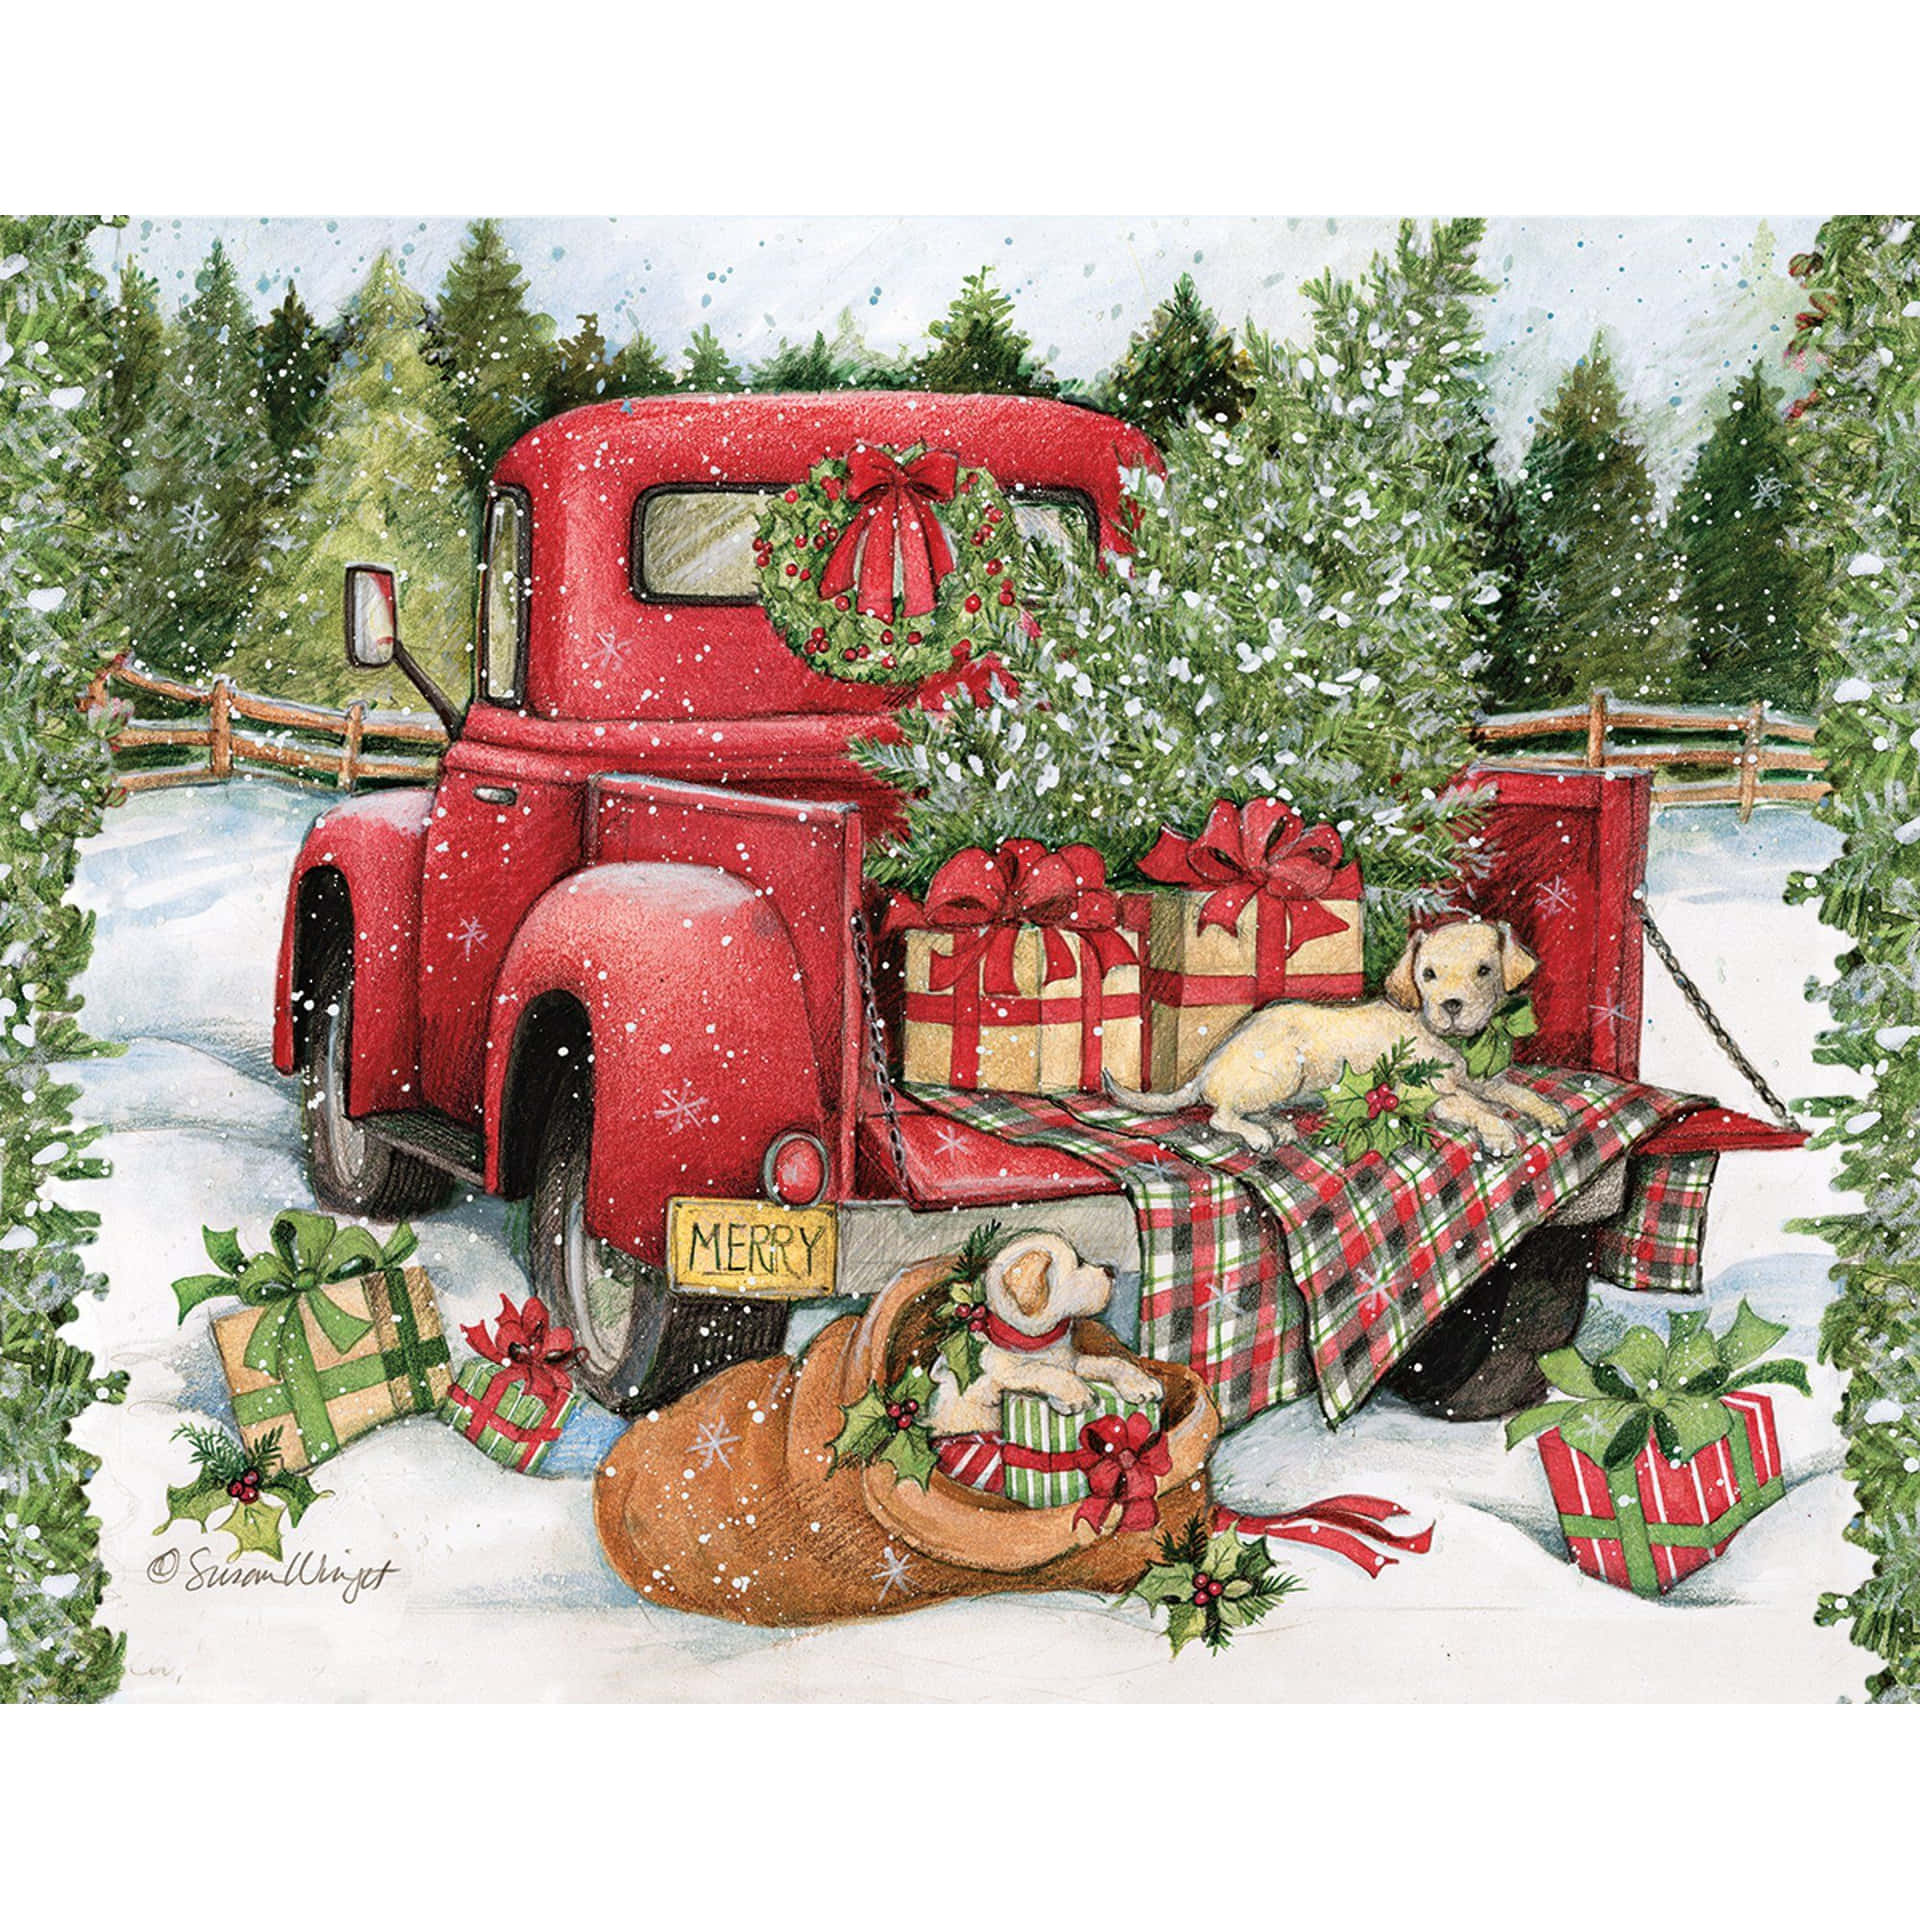 Feiernsie Die Freuden Der Weihnachtszeit Mit Einem Vintage-truck-weihnachten Wallpaper